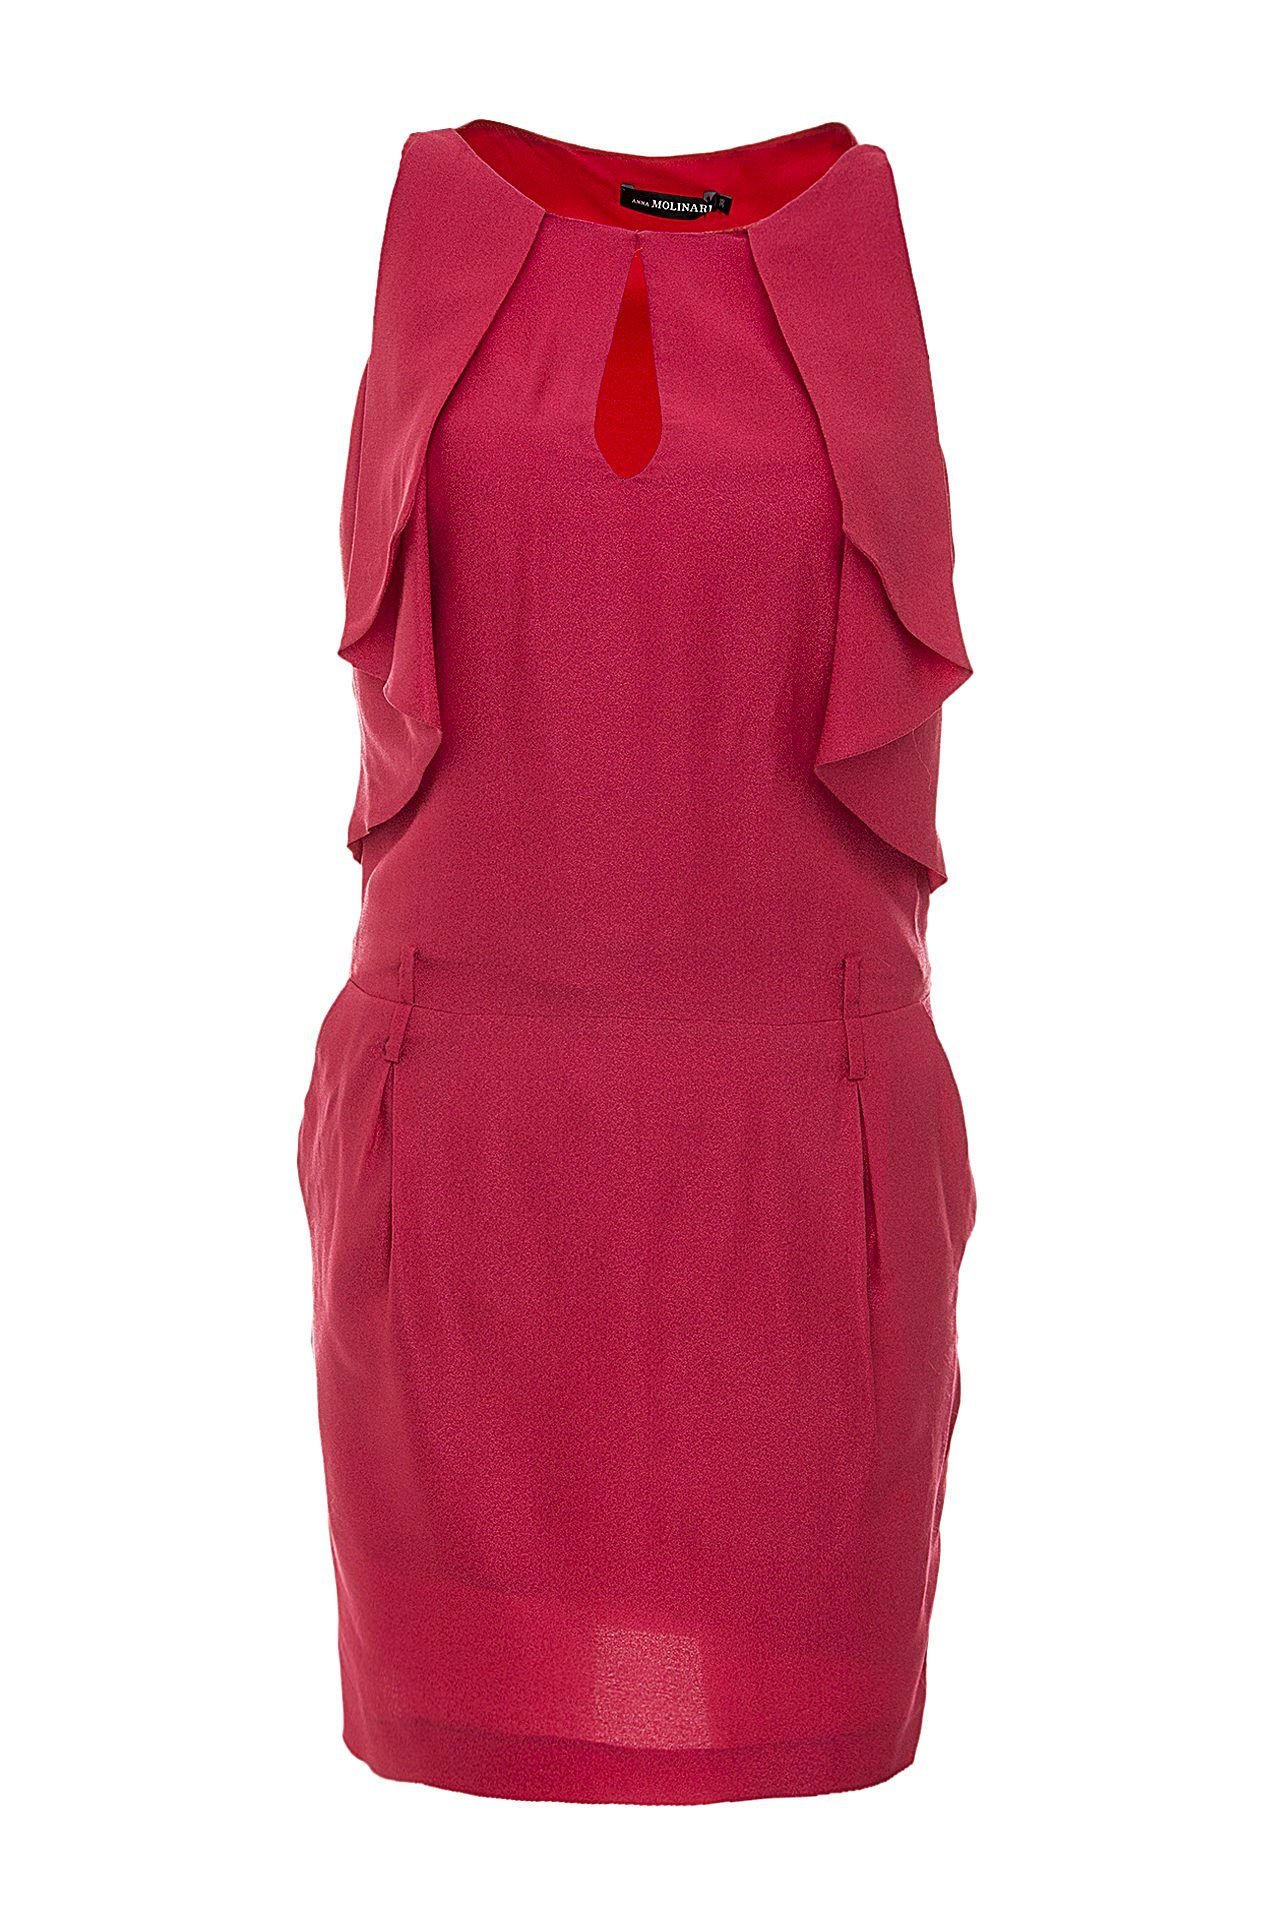 Одежда женская Платье ANNA MOLINARI (AV09080T6199/10.1). Купить за 15800 руб.